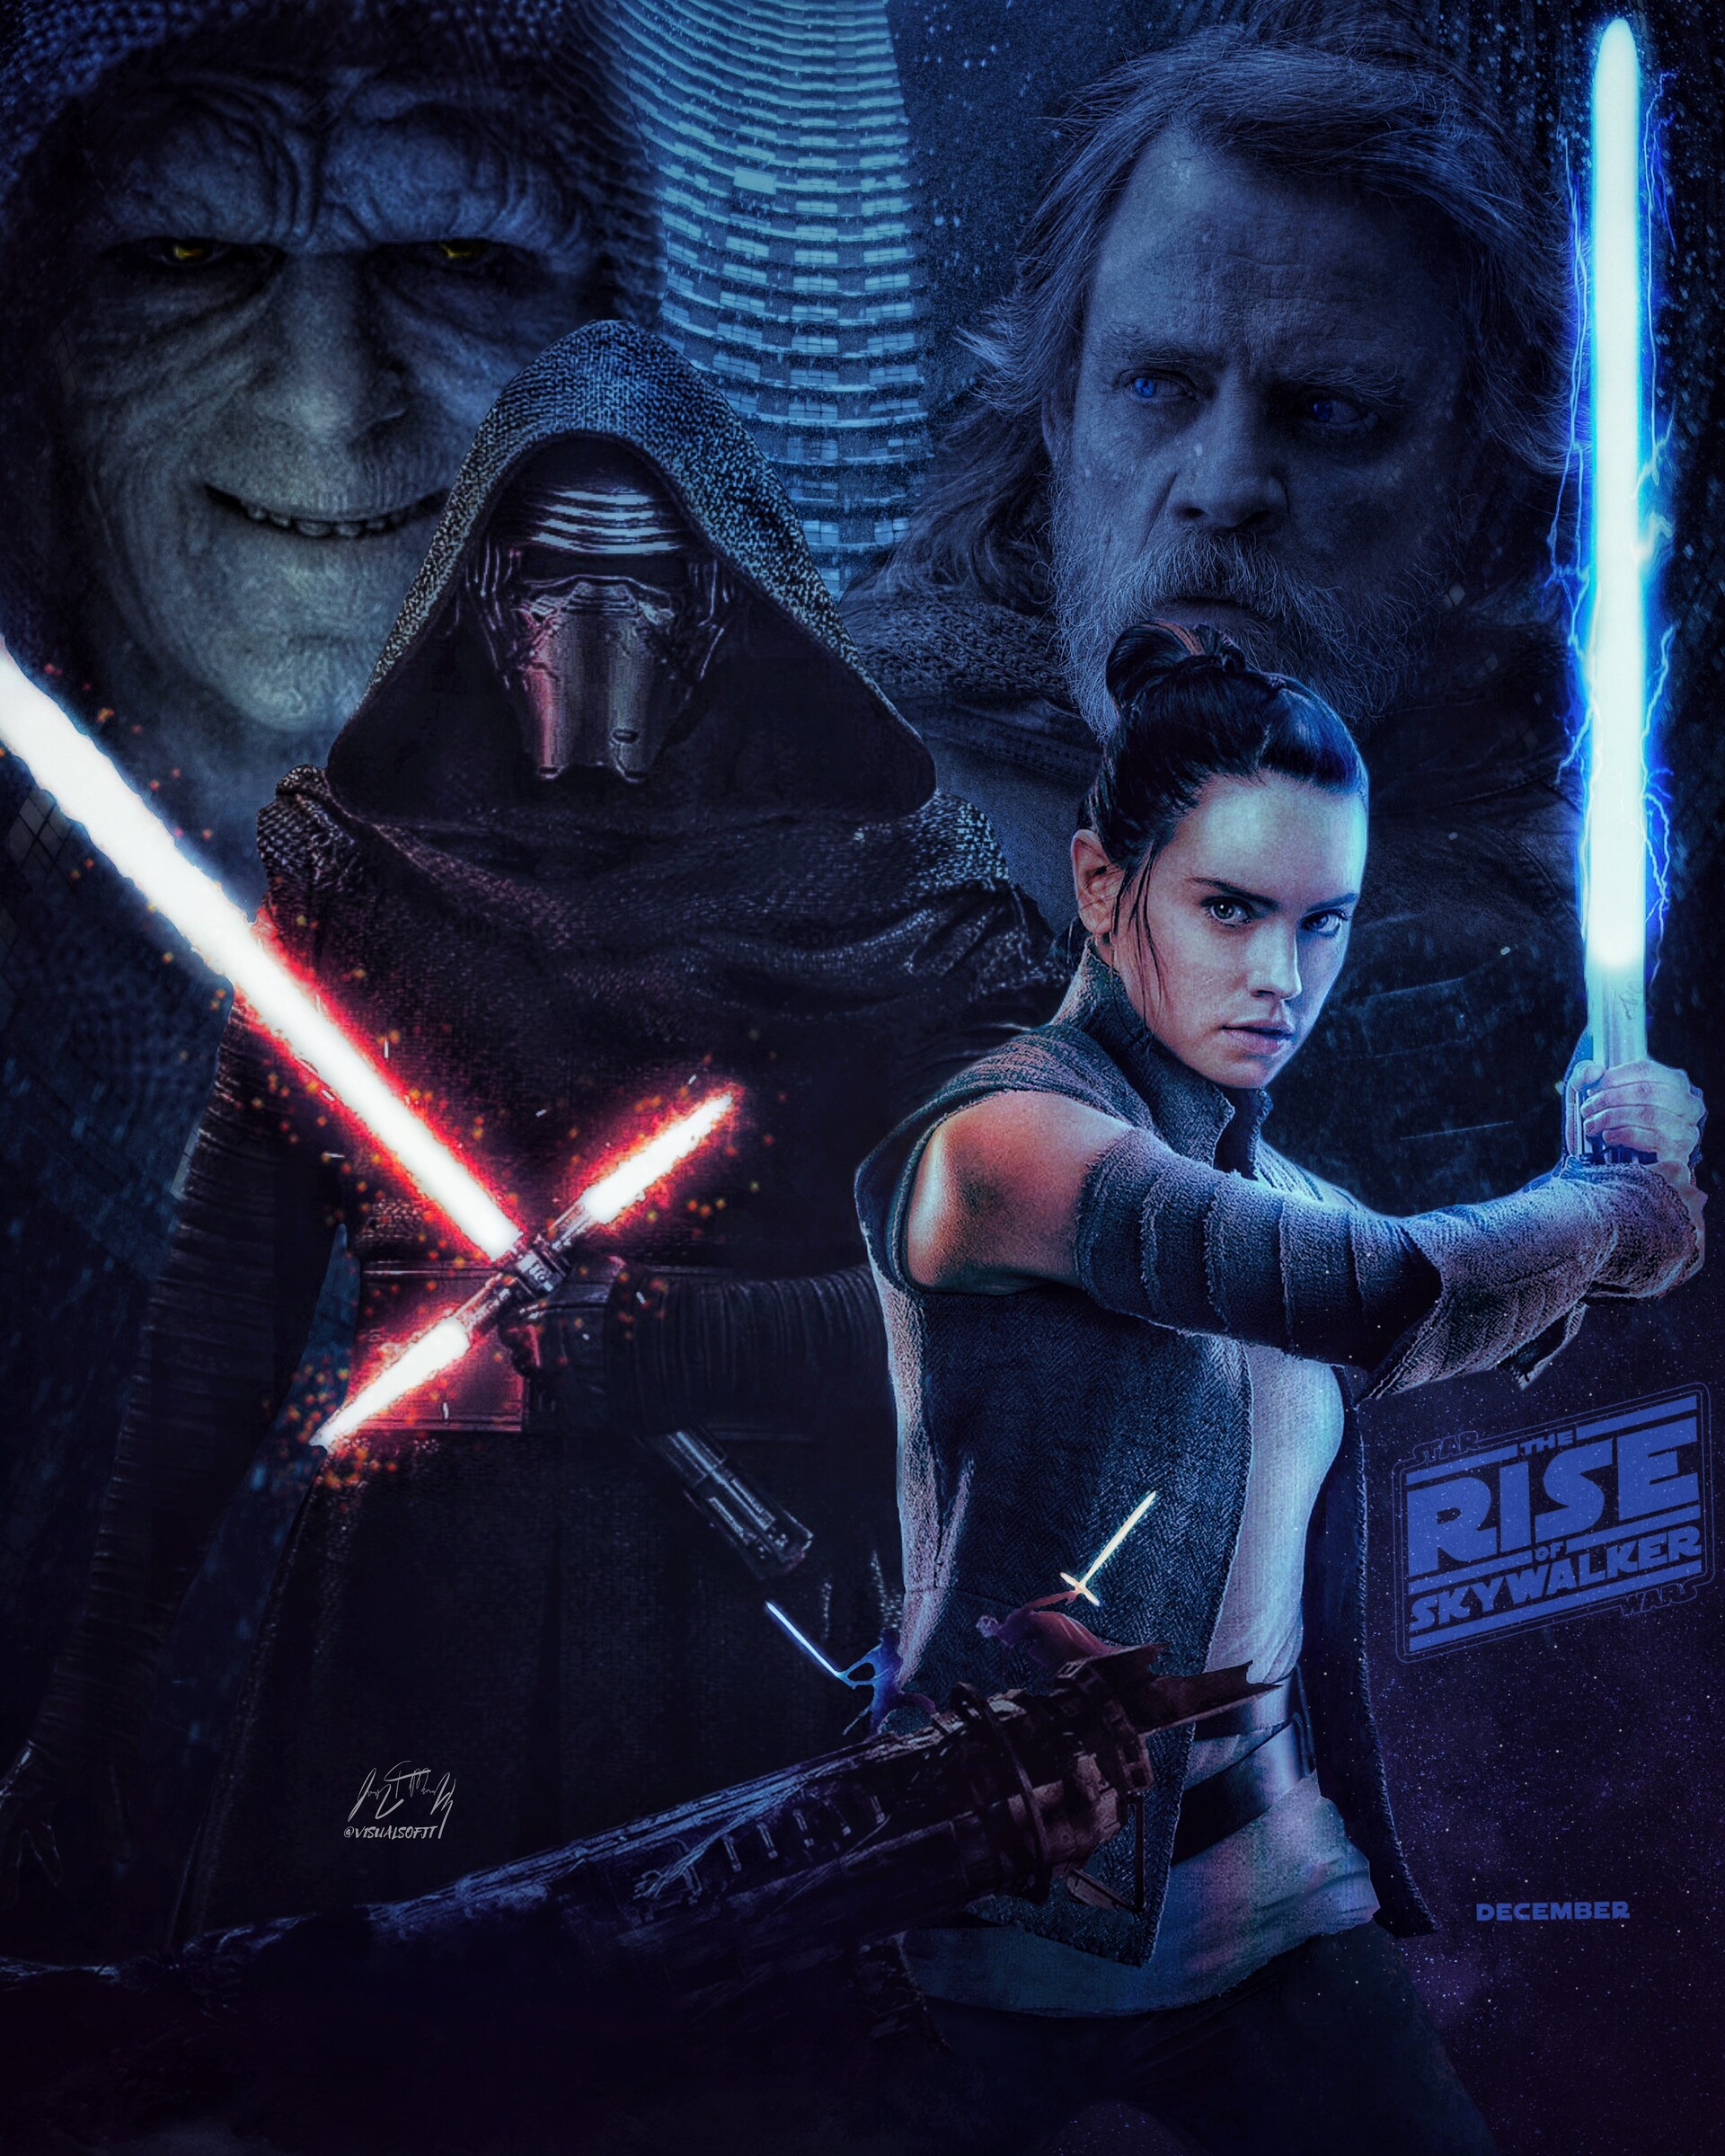 Star Wars: The Rise of Skywalker Art by JT McDowall